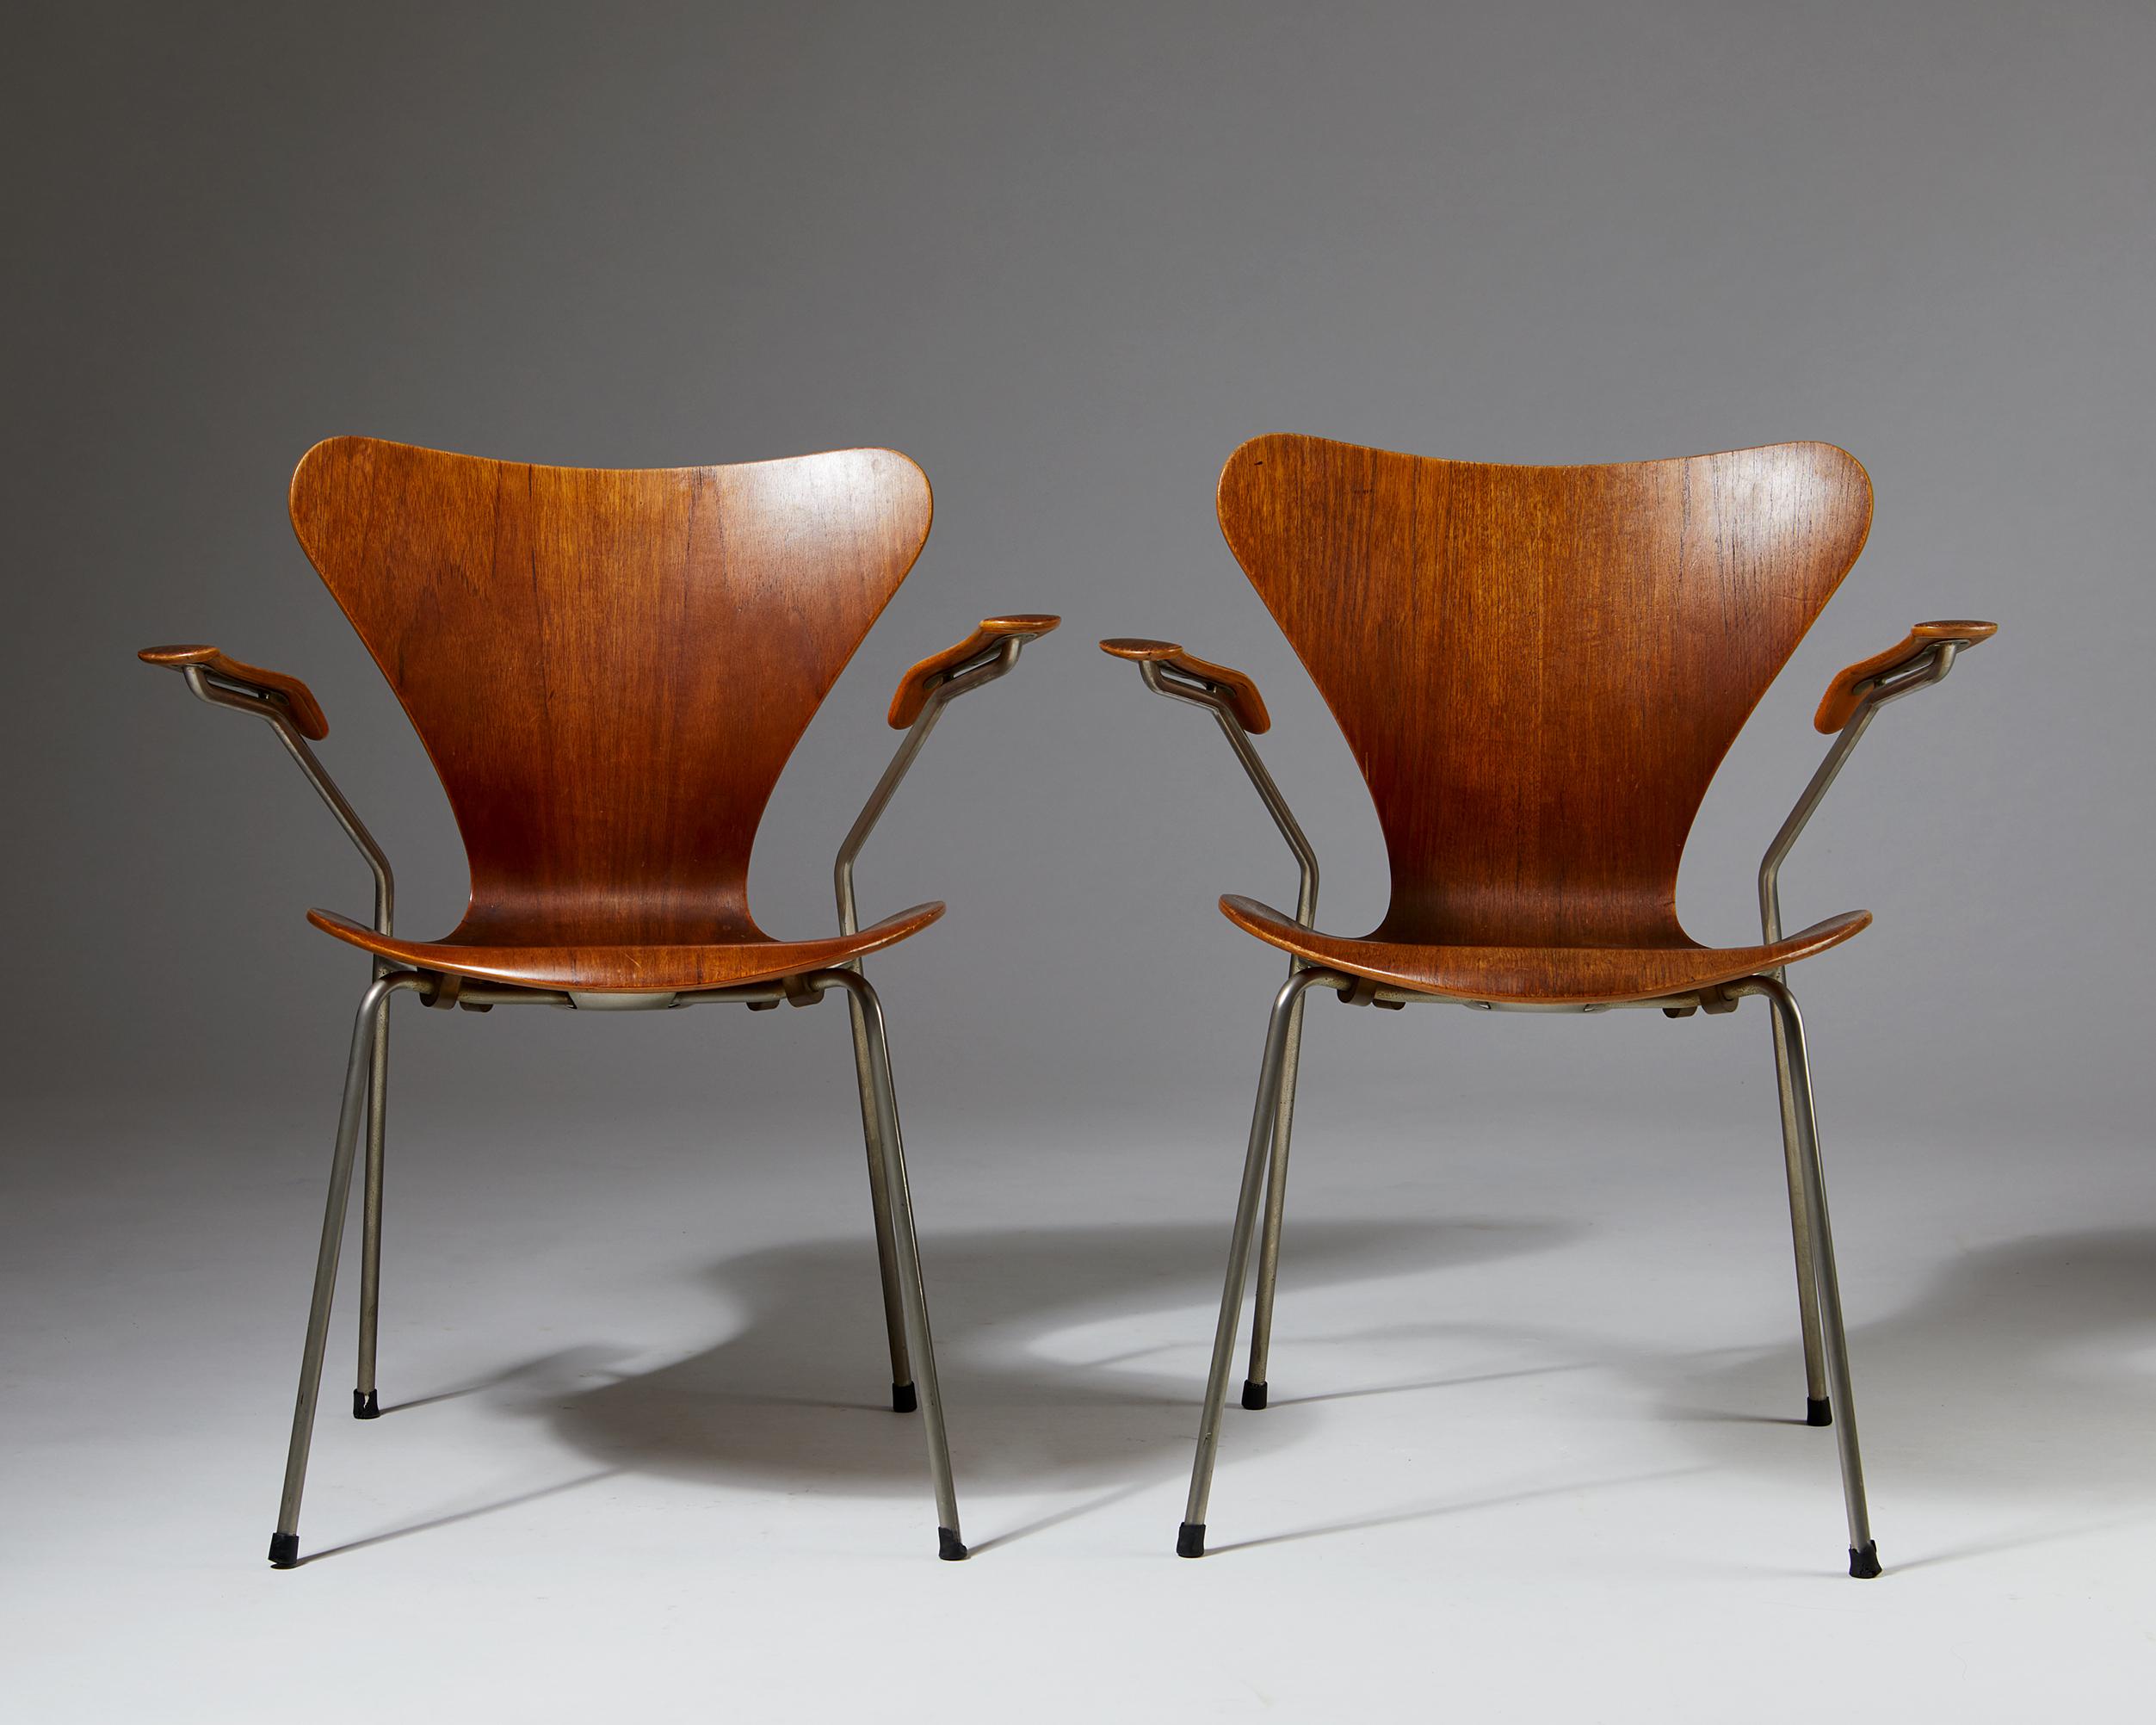 Scandinavian Modern Pair of Armchairs Designed by Arne Jacobsen for Fritz Hansen, Denmark. 1950's. 